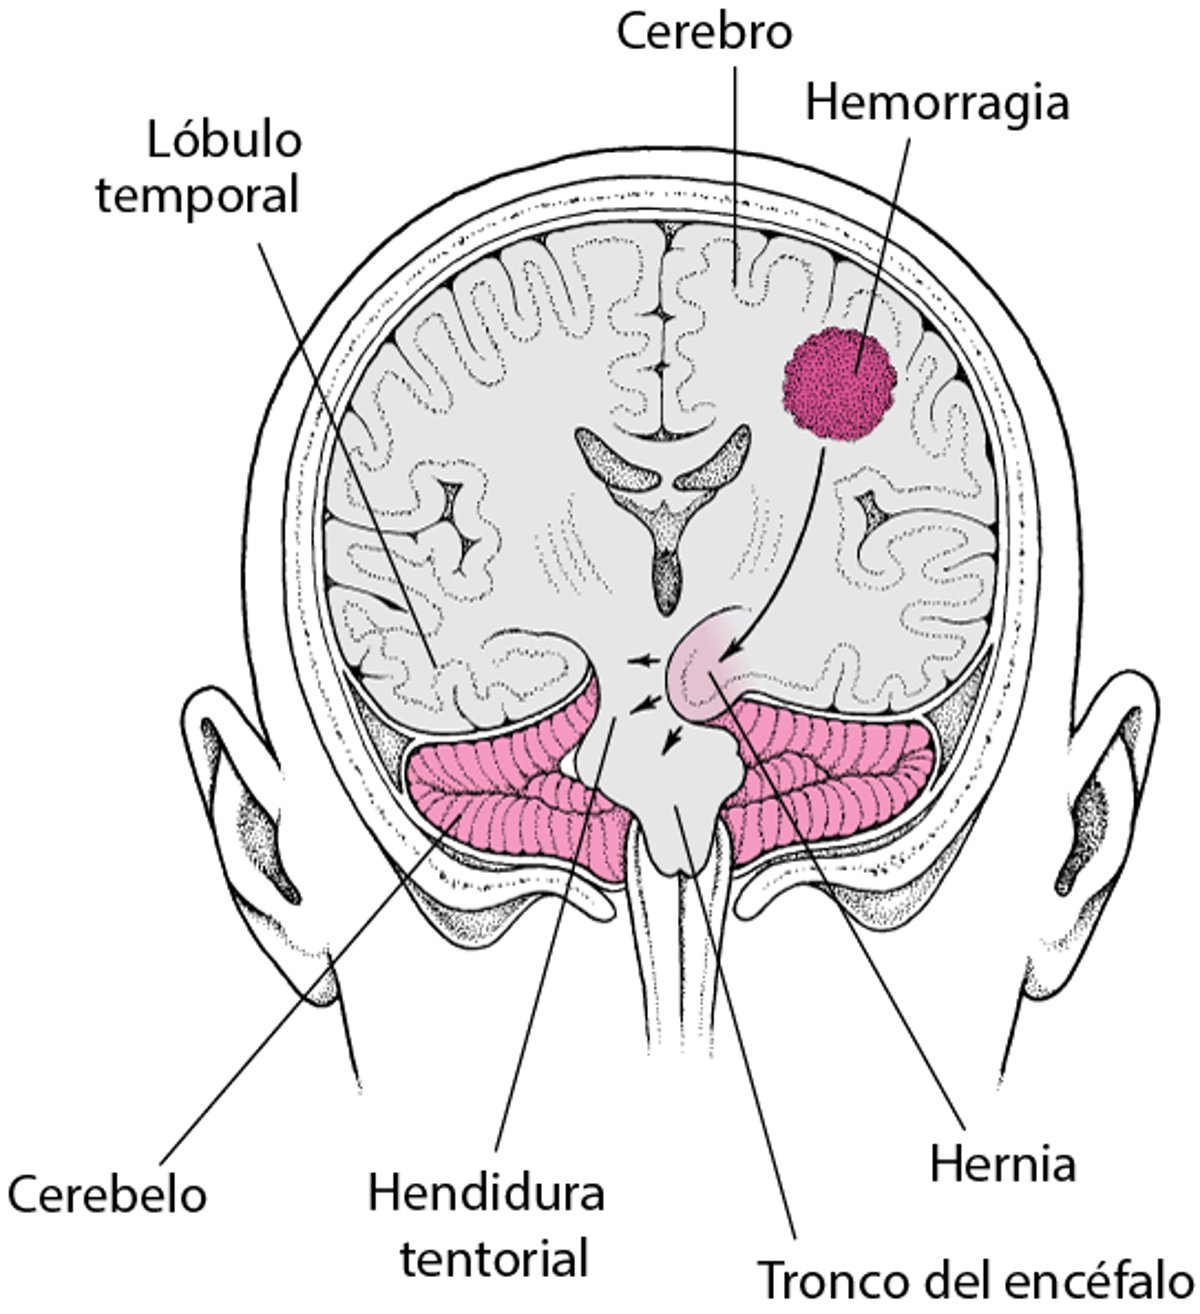 Hernia: el encéfalo bajo presión